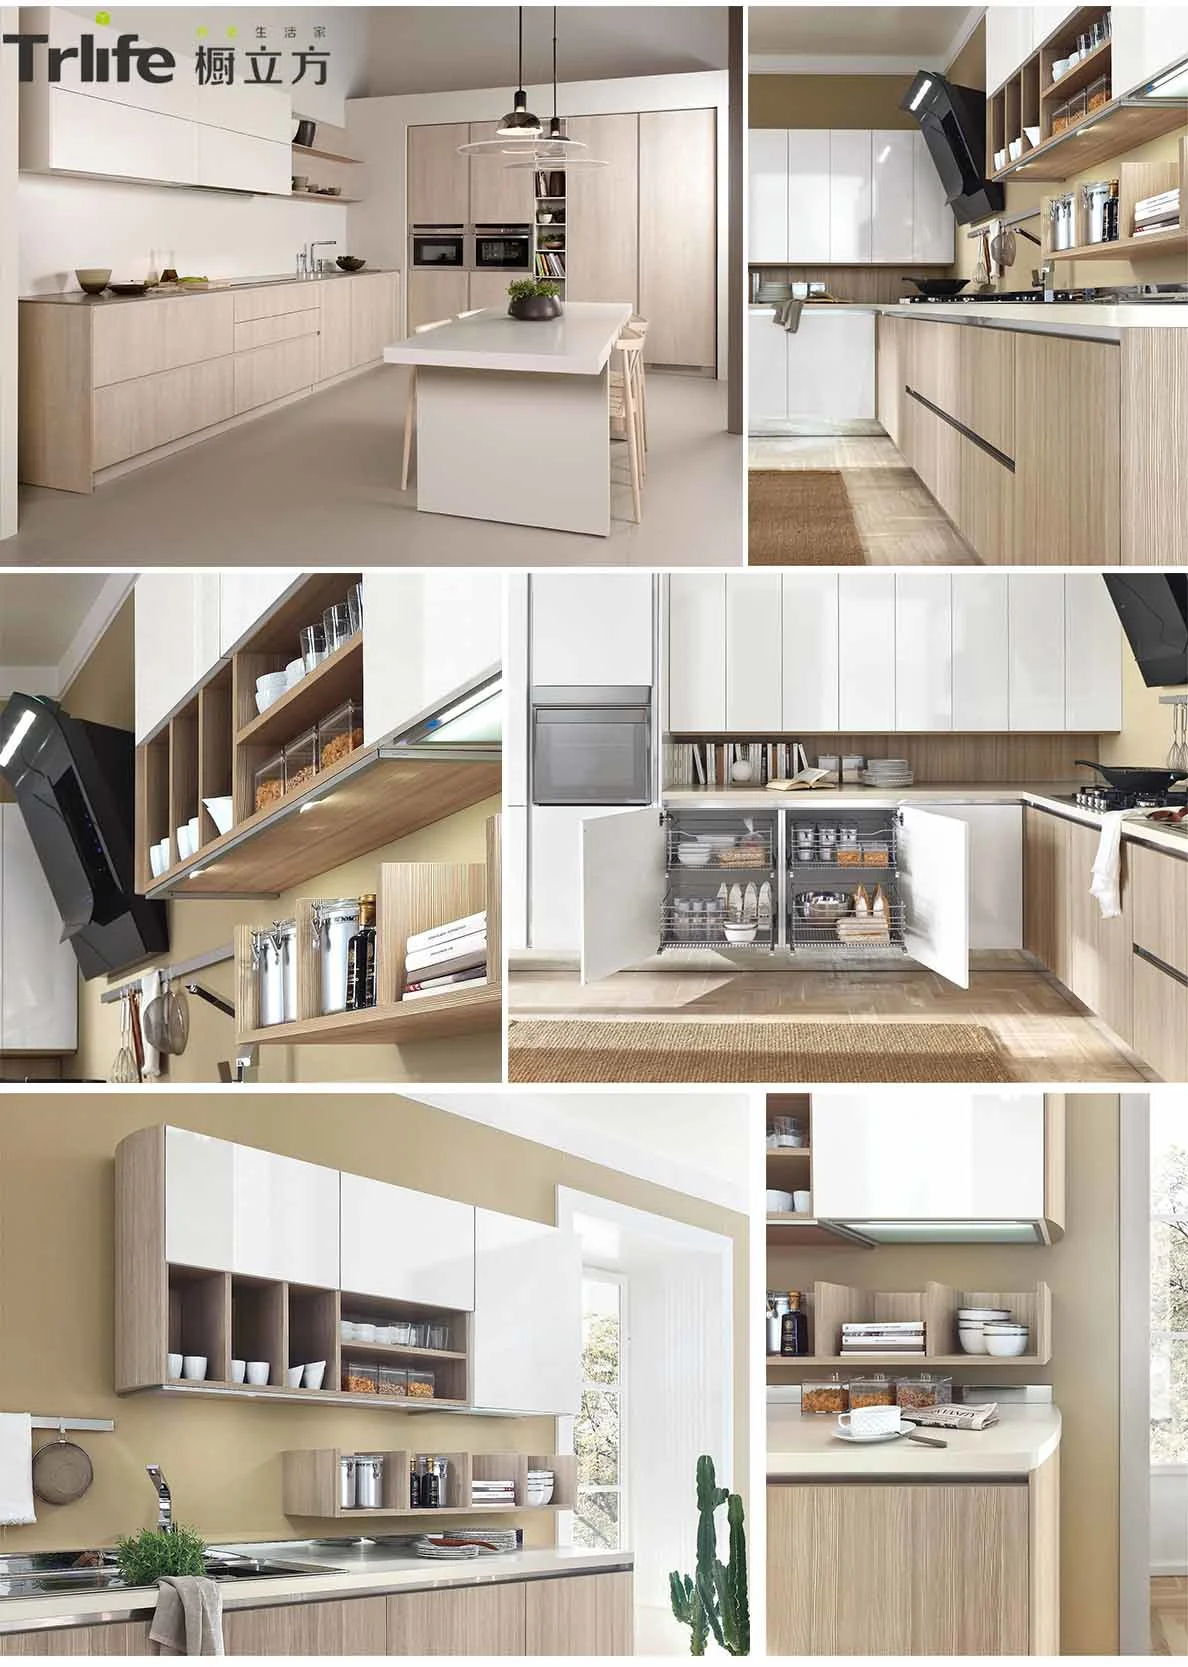 Customized modern modular kitchen cabinets white and wood grain kitchen cabinets inbuilt kitchen furniture